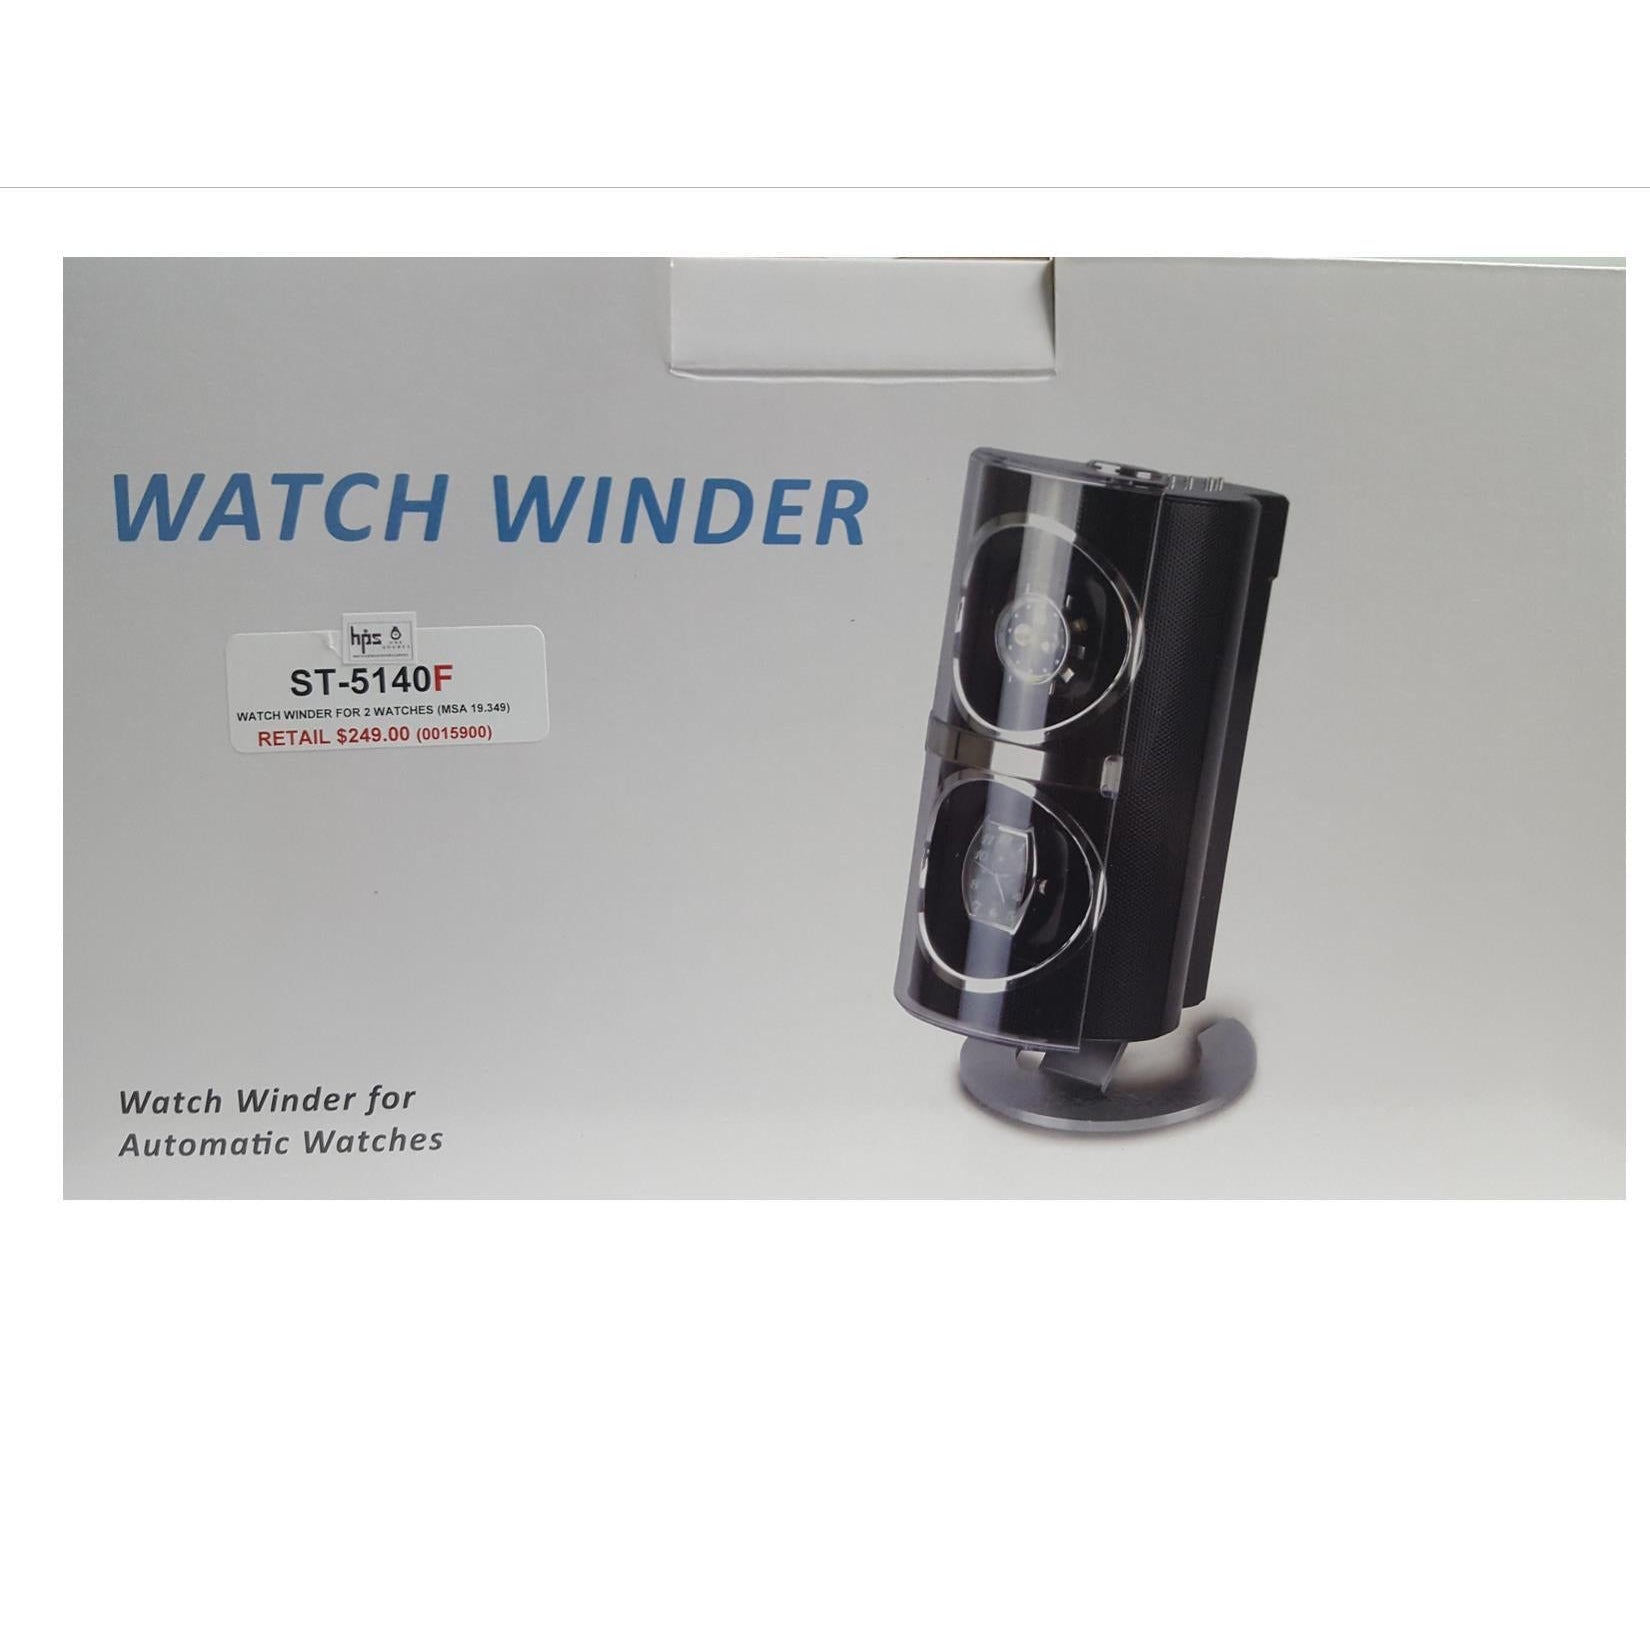 WATCH WINDER ST-5140F